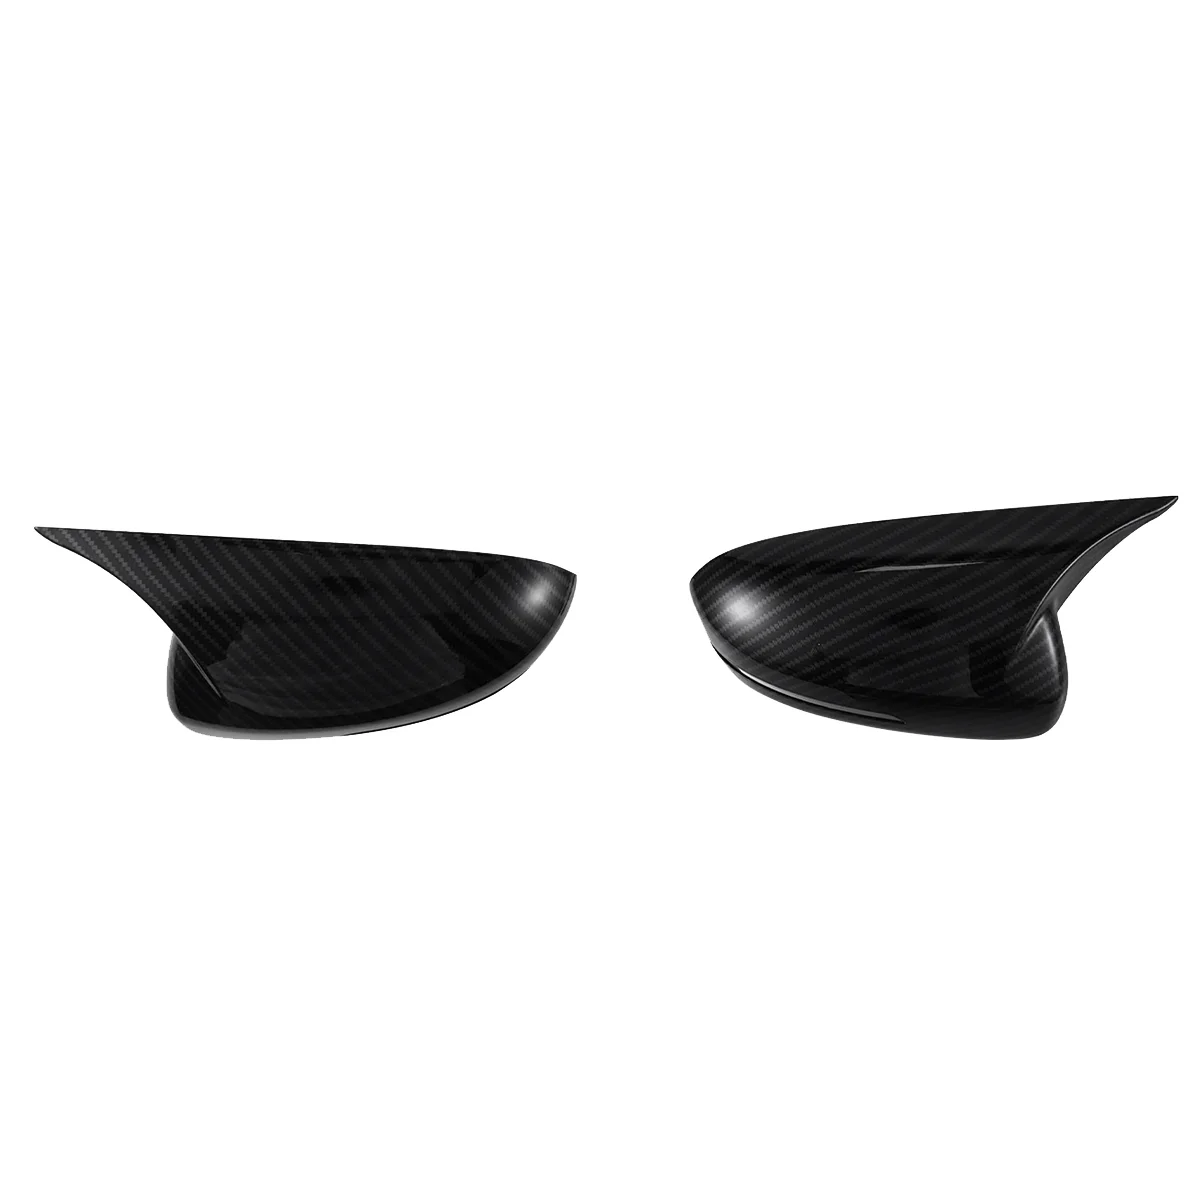 

1 пара крышек для зеркала заднего вида, Обрезанные колпачки Ox Horn для бокового зеркала K5 2011-2015 наклейка Shell Carbon